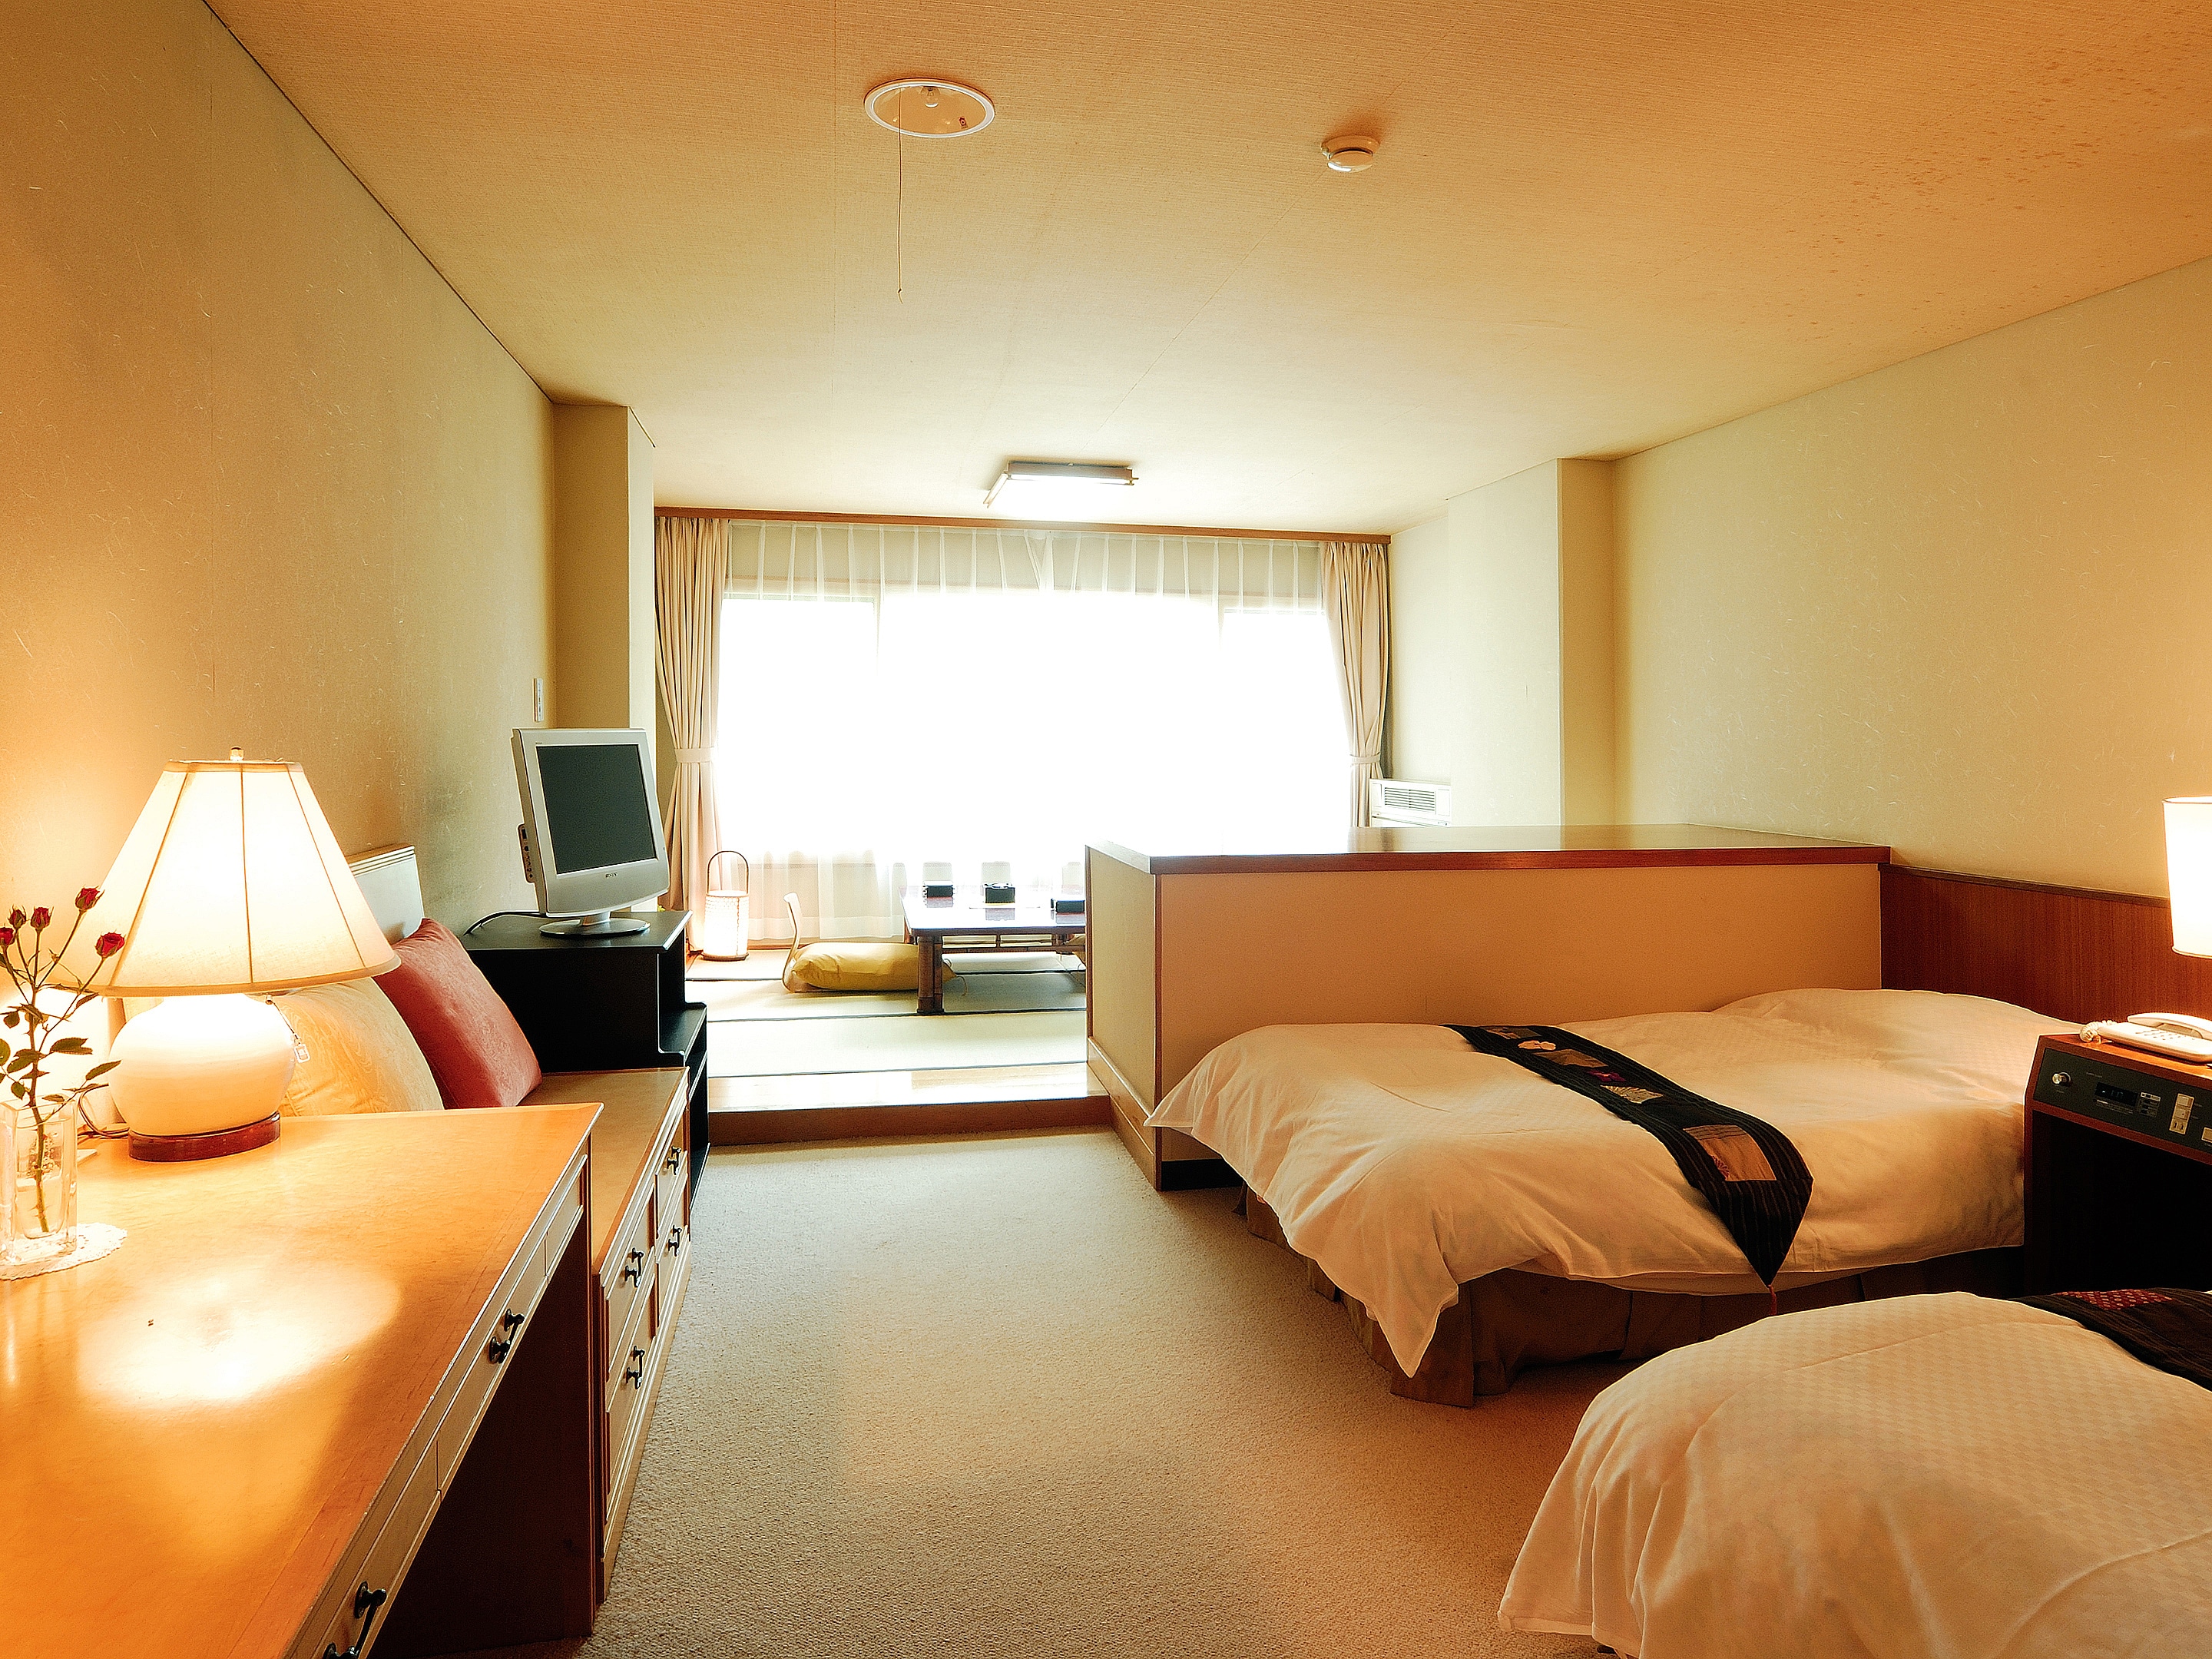 ห้องพักทั่วไป 35 ตร.ม. ห้องสไตล์ญี่ปุ่น 6 เสื่อทาทามิ + เตียงคู่